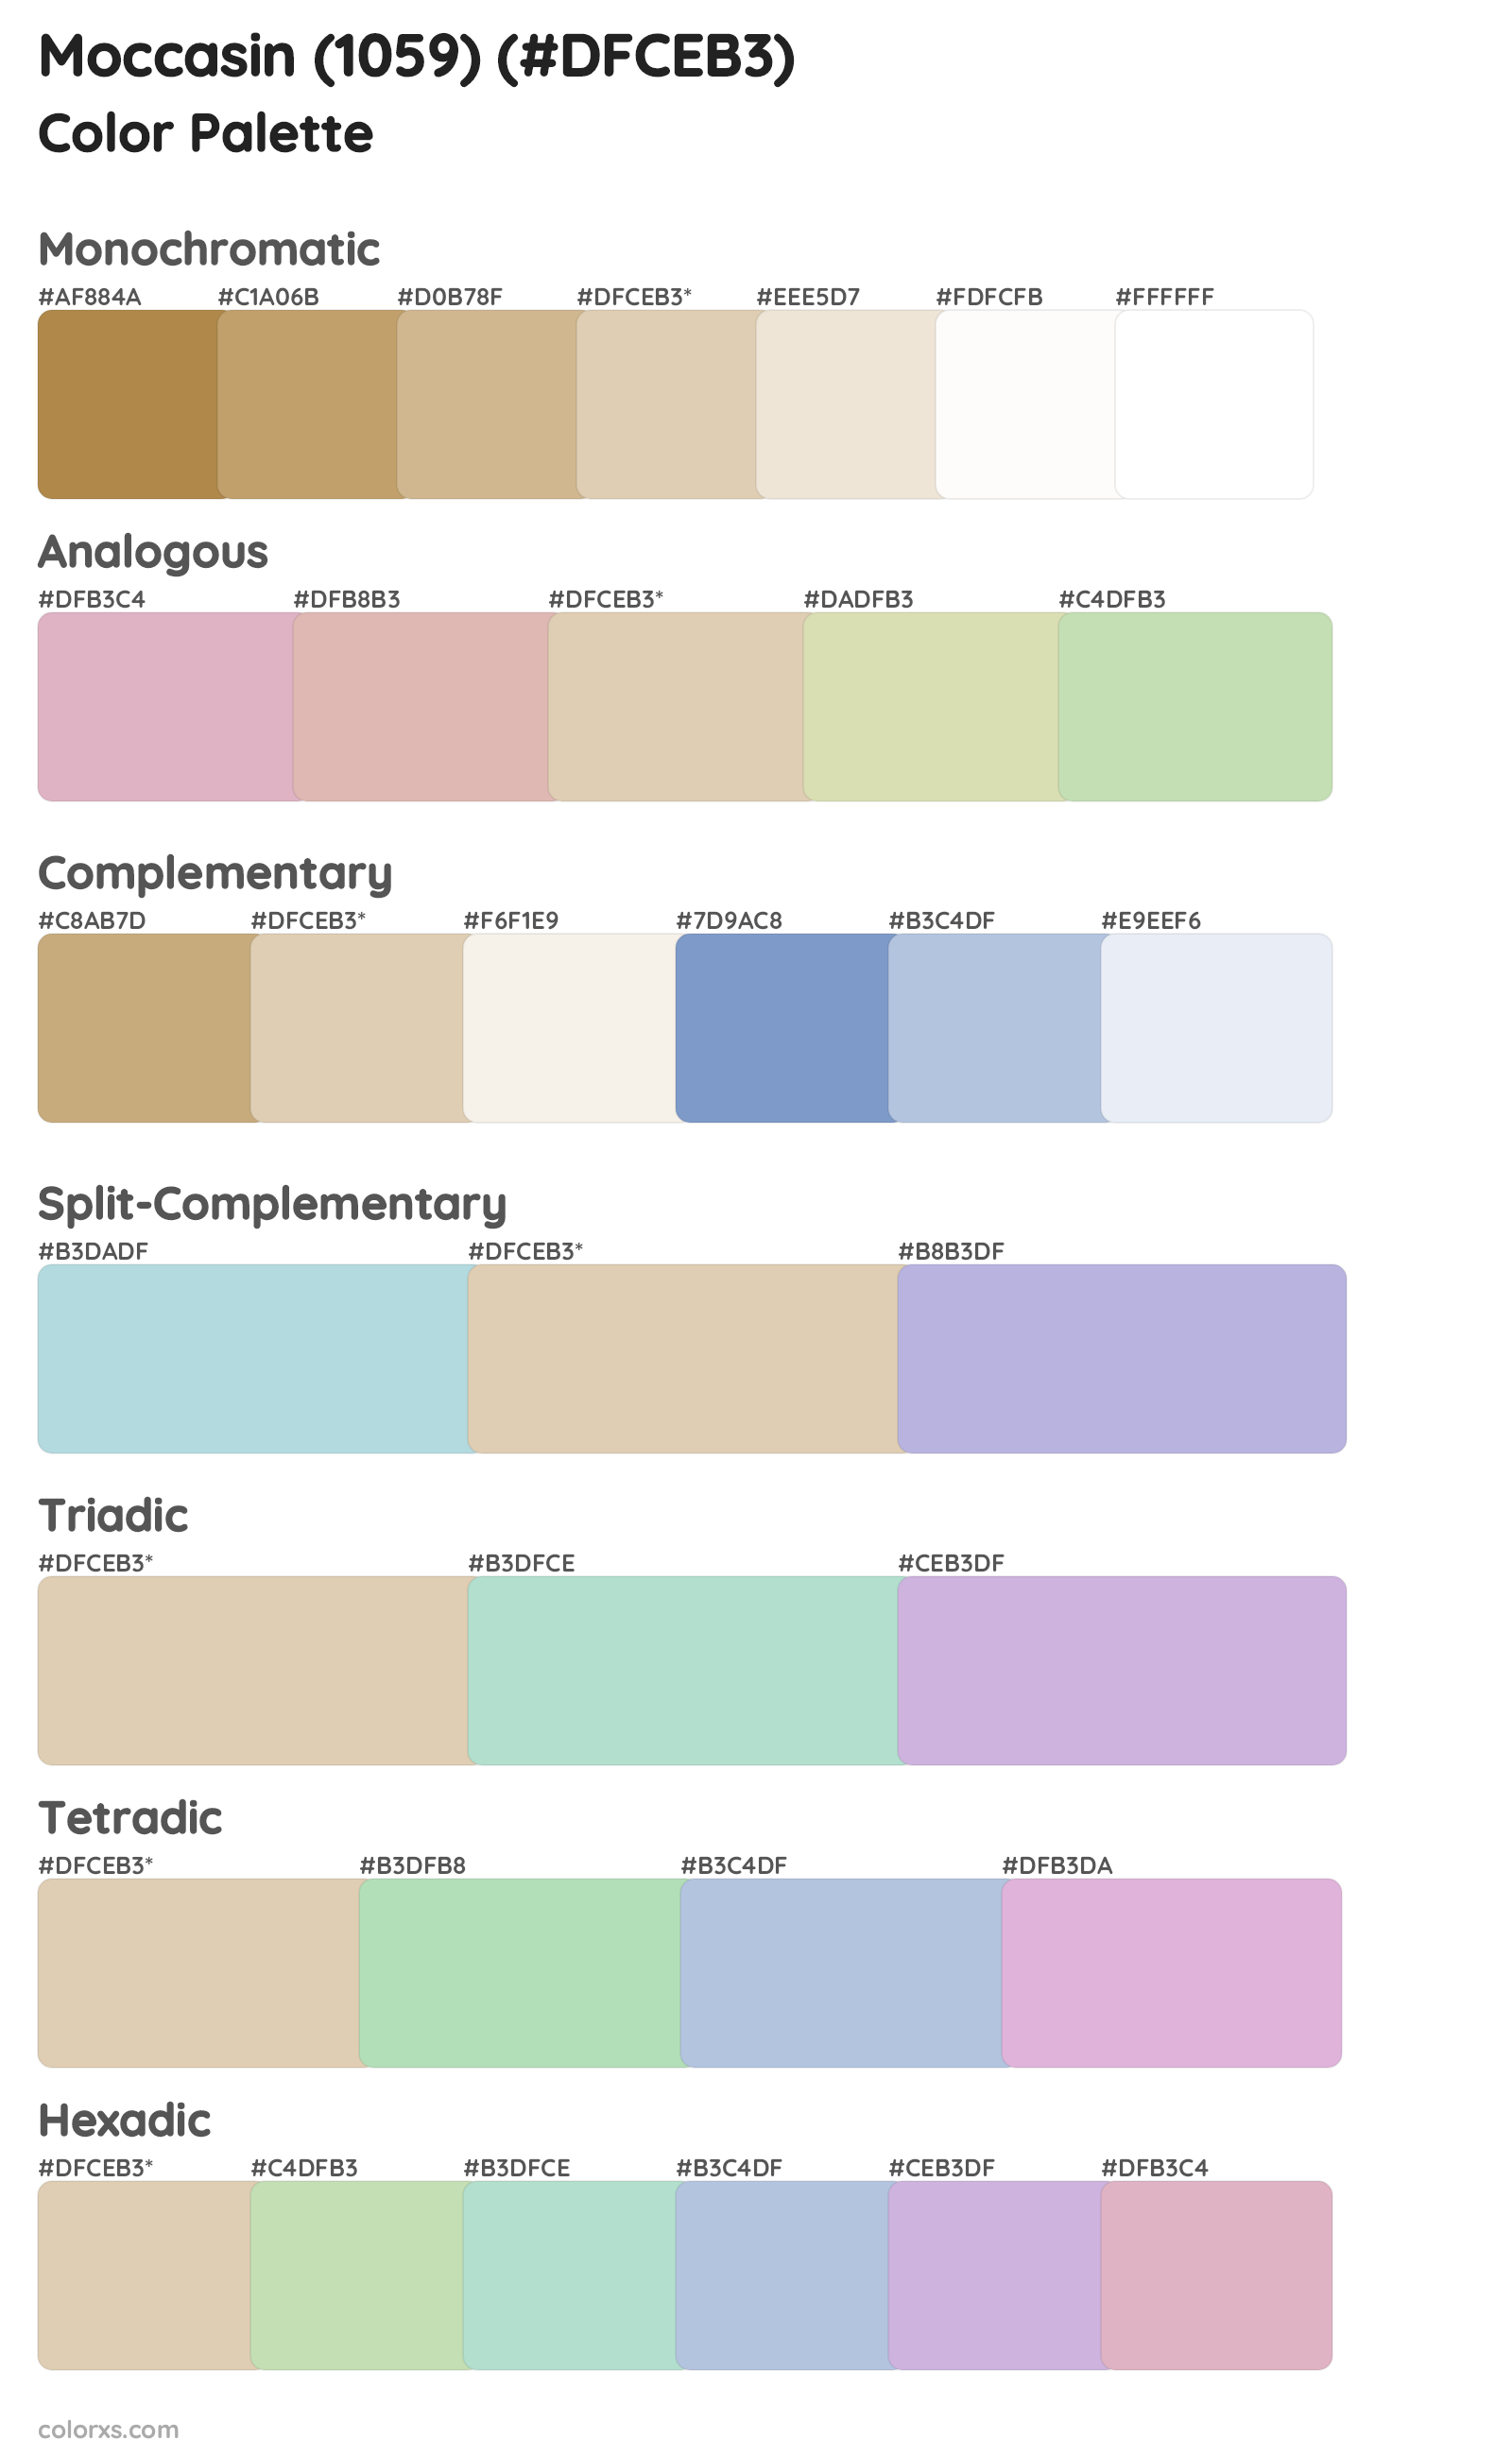 Moccasin (1059) Color Scheme Palettes